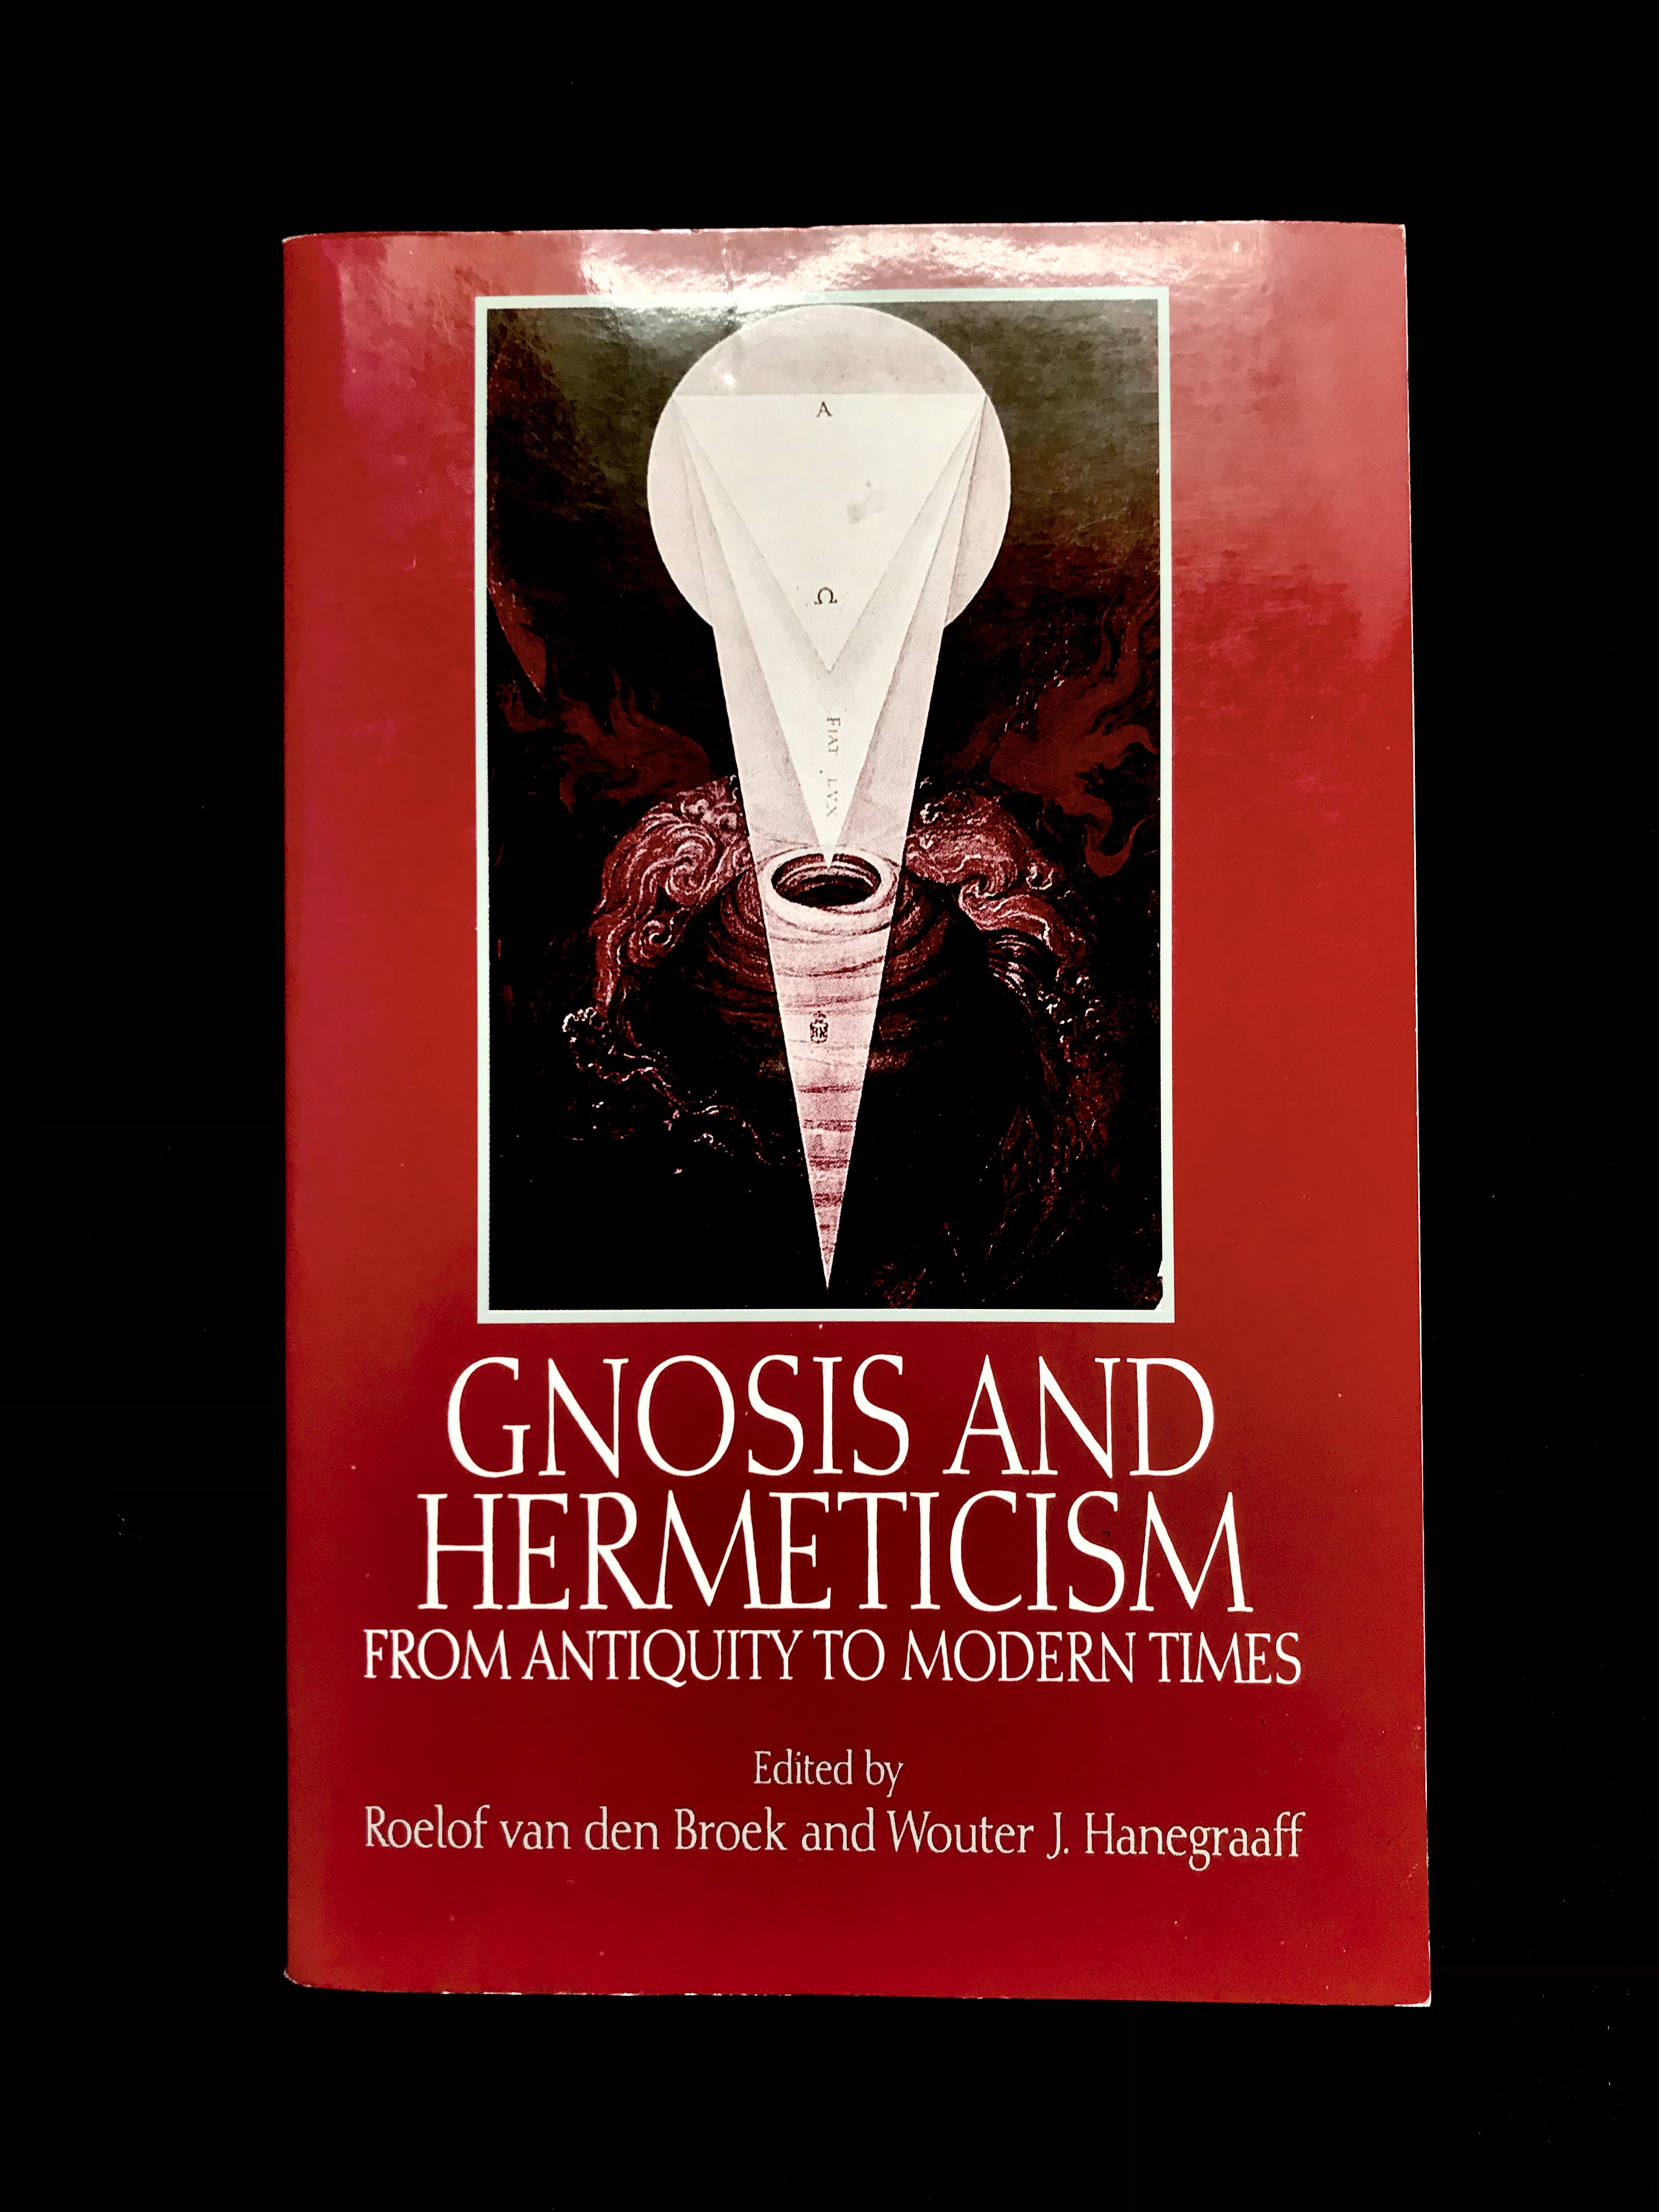 Gnosis and Hermeticism by Roelof Van Den Broek & W. J. Hanergraaf